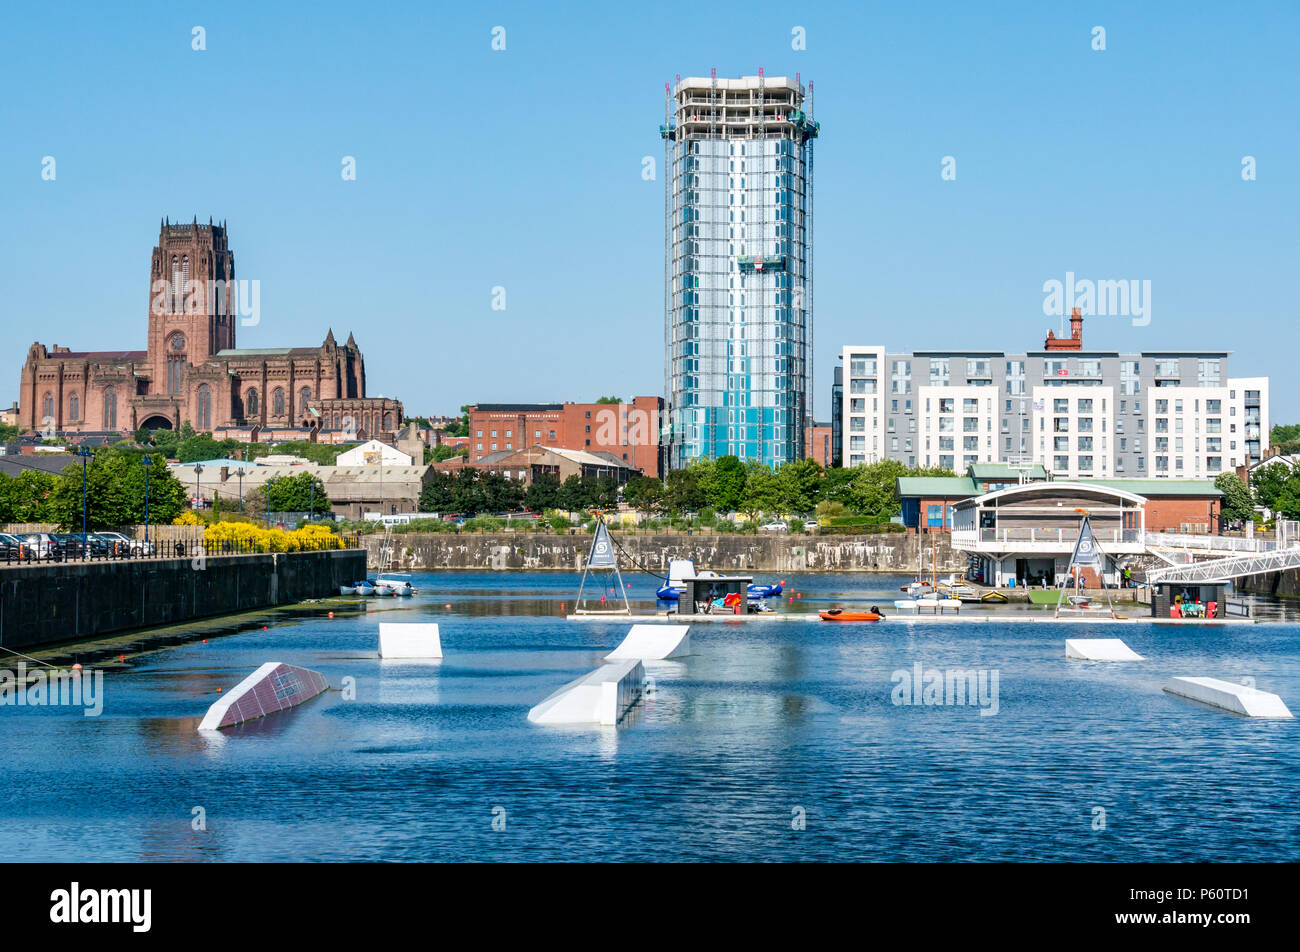 Liverpool, centro de deportes acuáticos, Queen's Dock, con la catedral de Liverpool y moderna torre de apartamentos, Liverpool, Inglaterra, Reino Unido el día soleado con el cielo azul Foto de stock